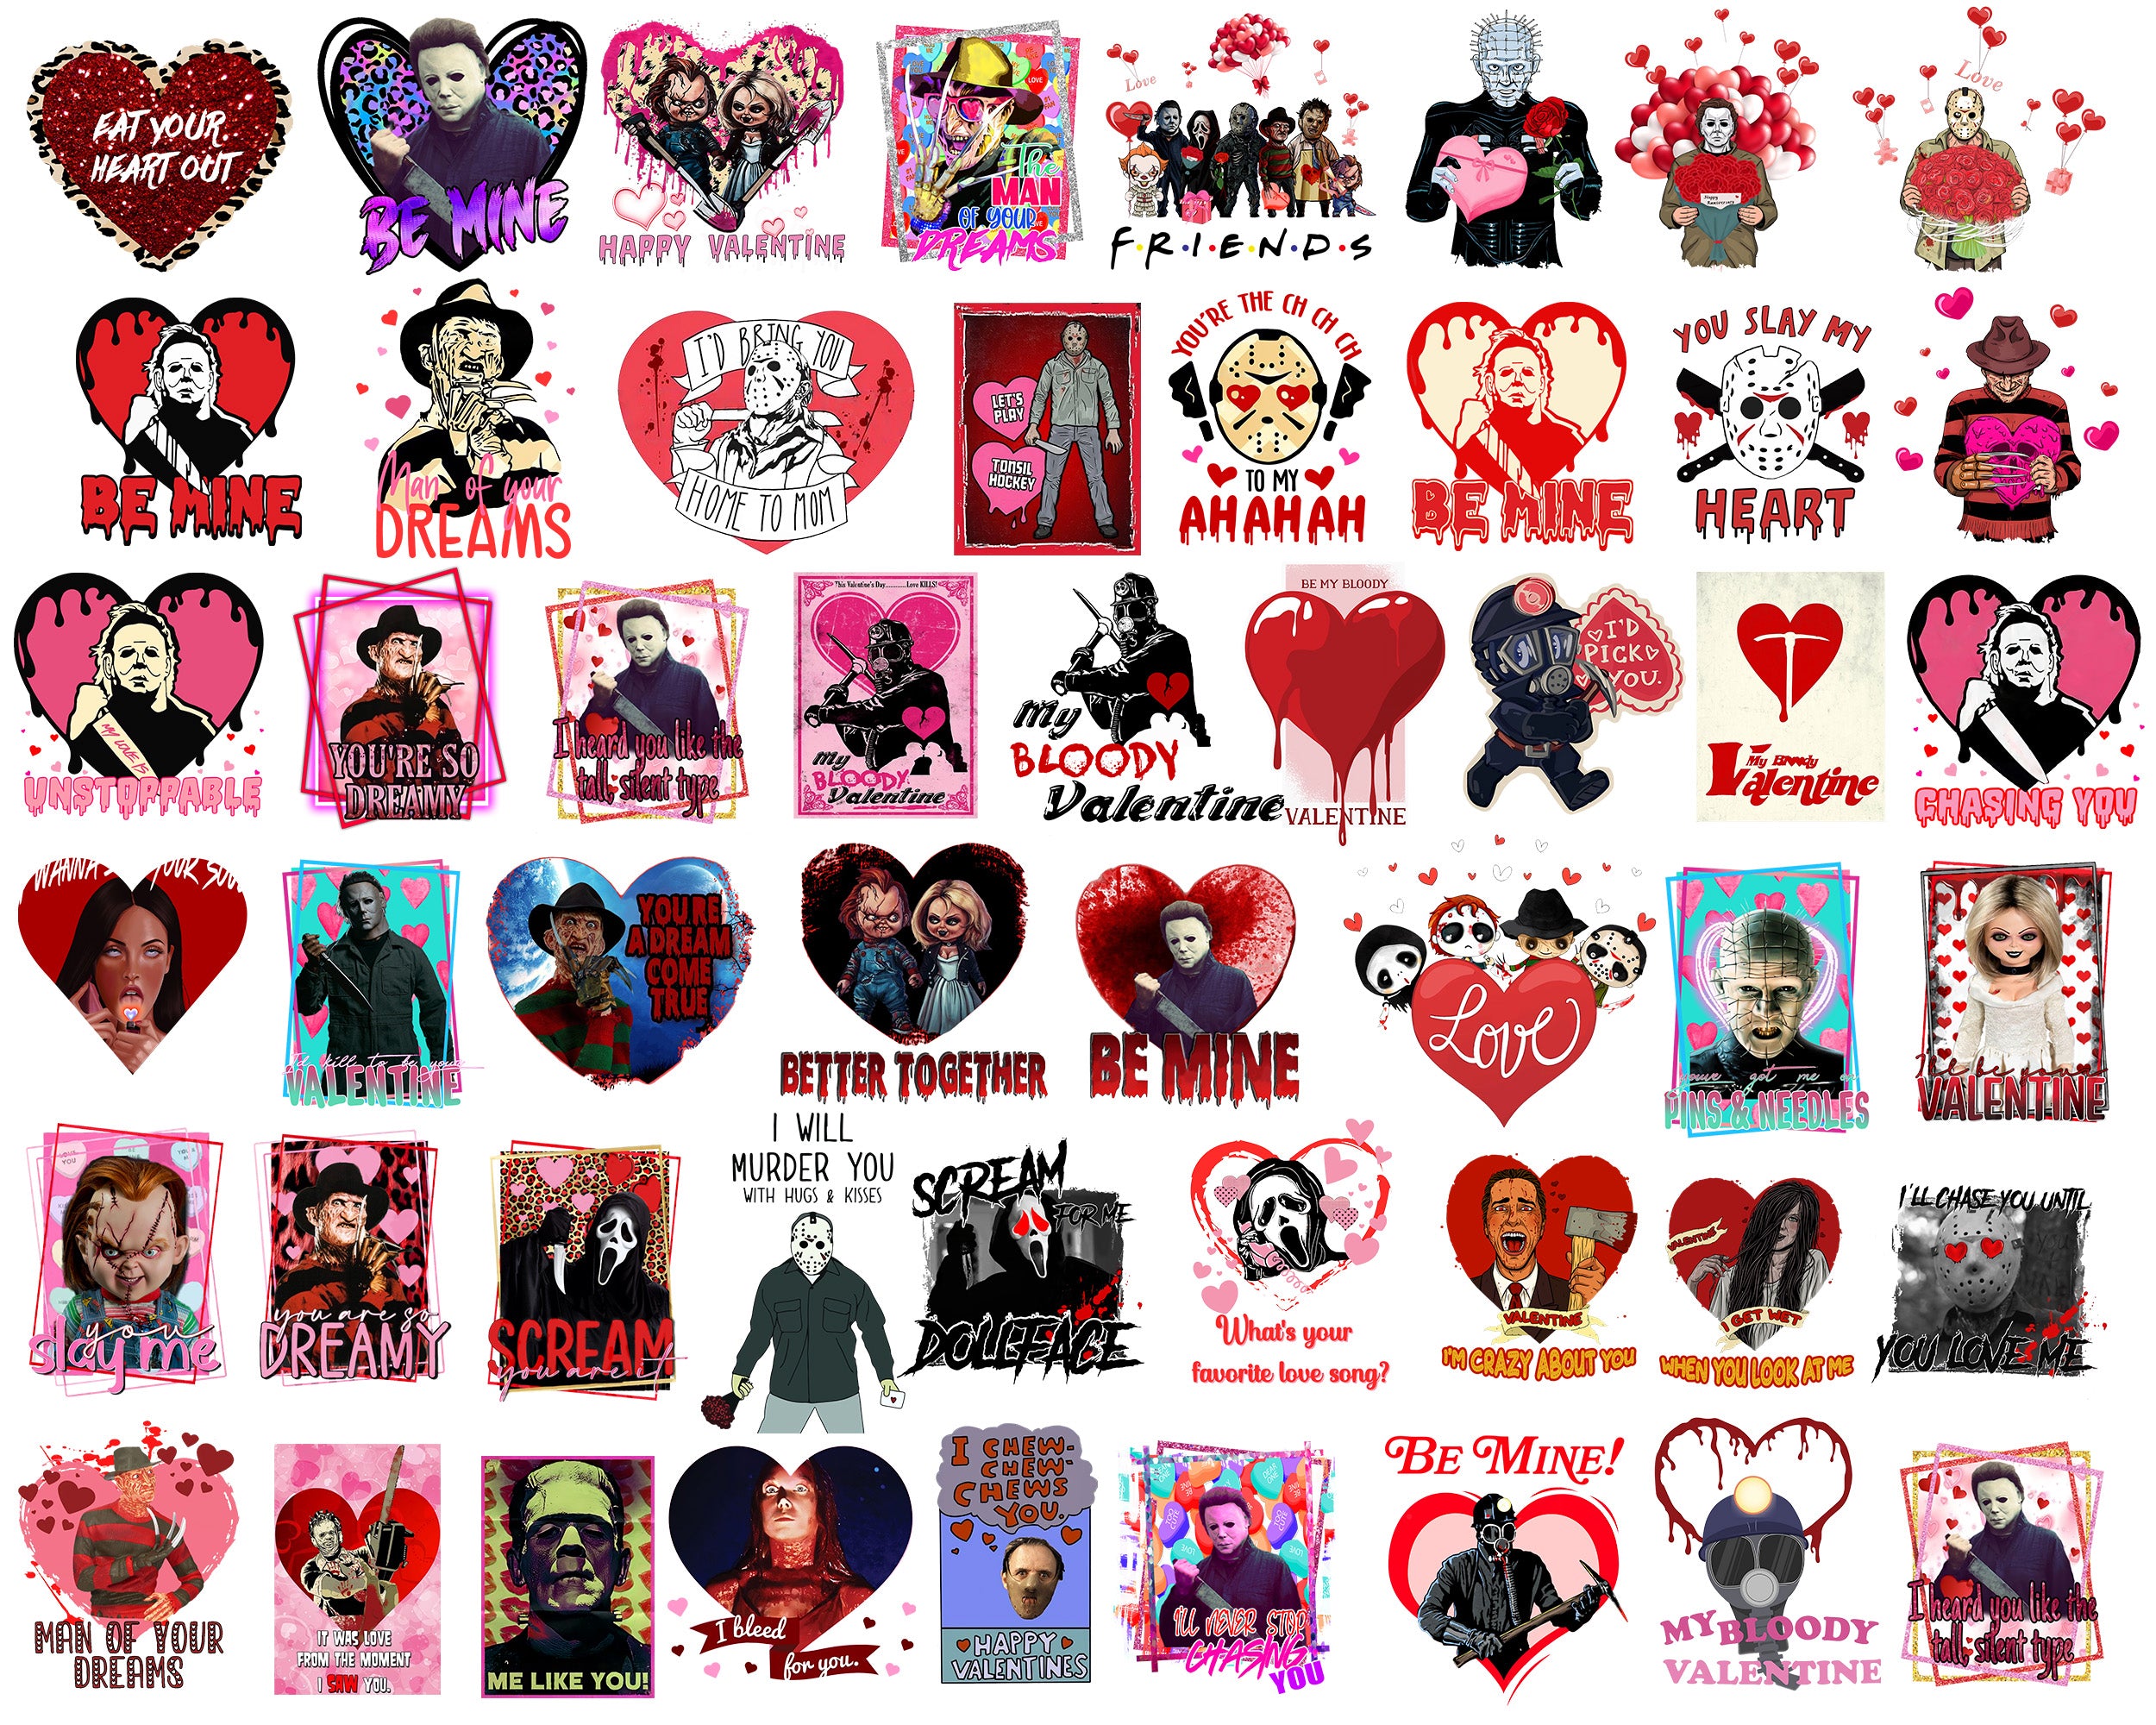 Version 2 - 50+ Horror Valentine bundle, Valentine's day PNG, Valentine sublimation Design Digital Download